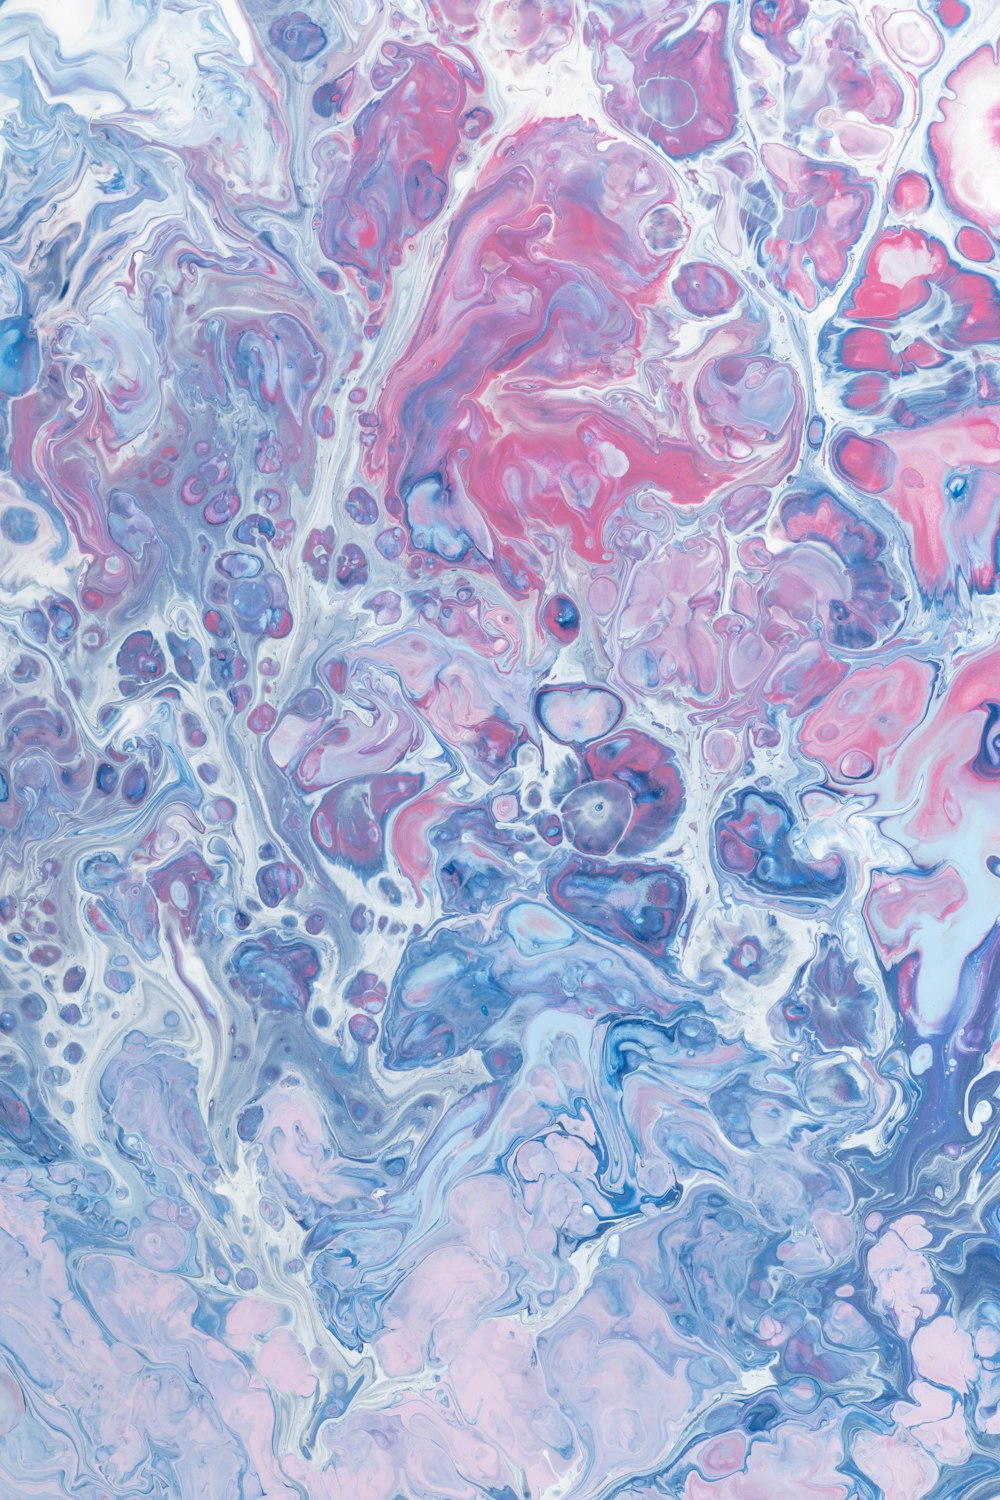 Un primer plano de una pintura abstracta con colores azul, rosa y púrpura